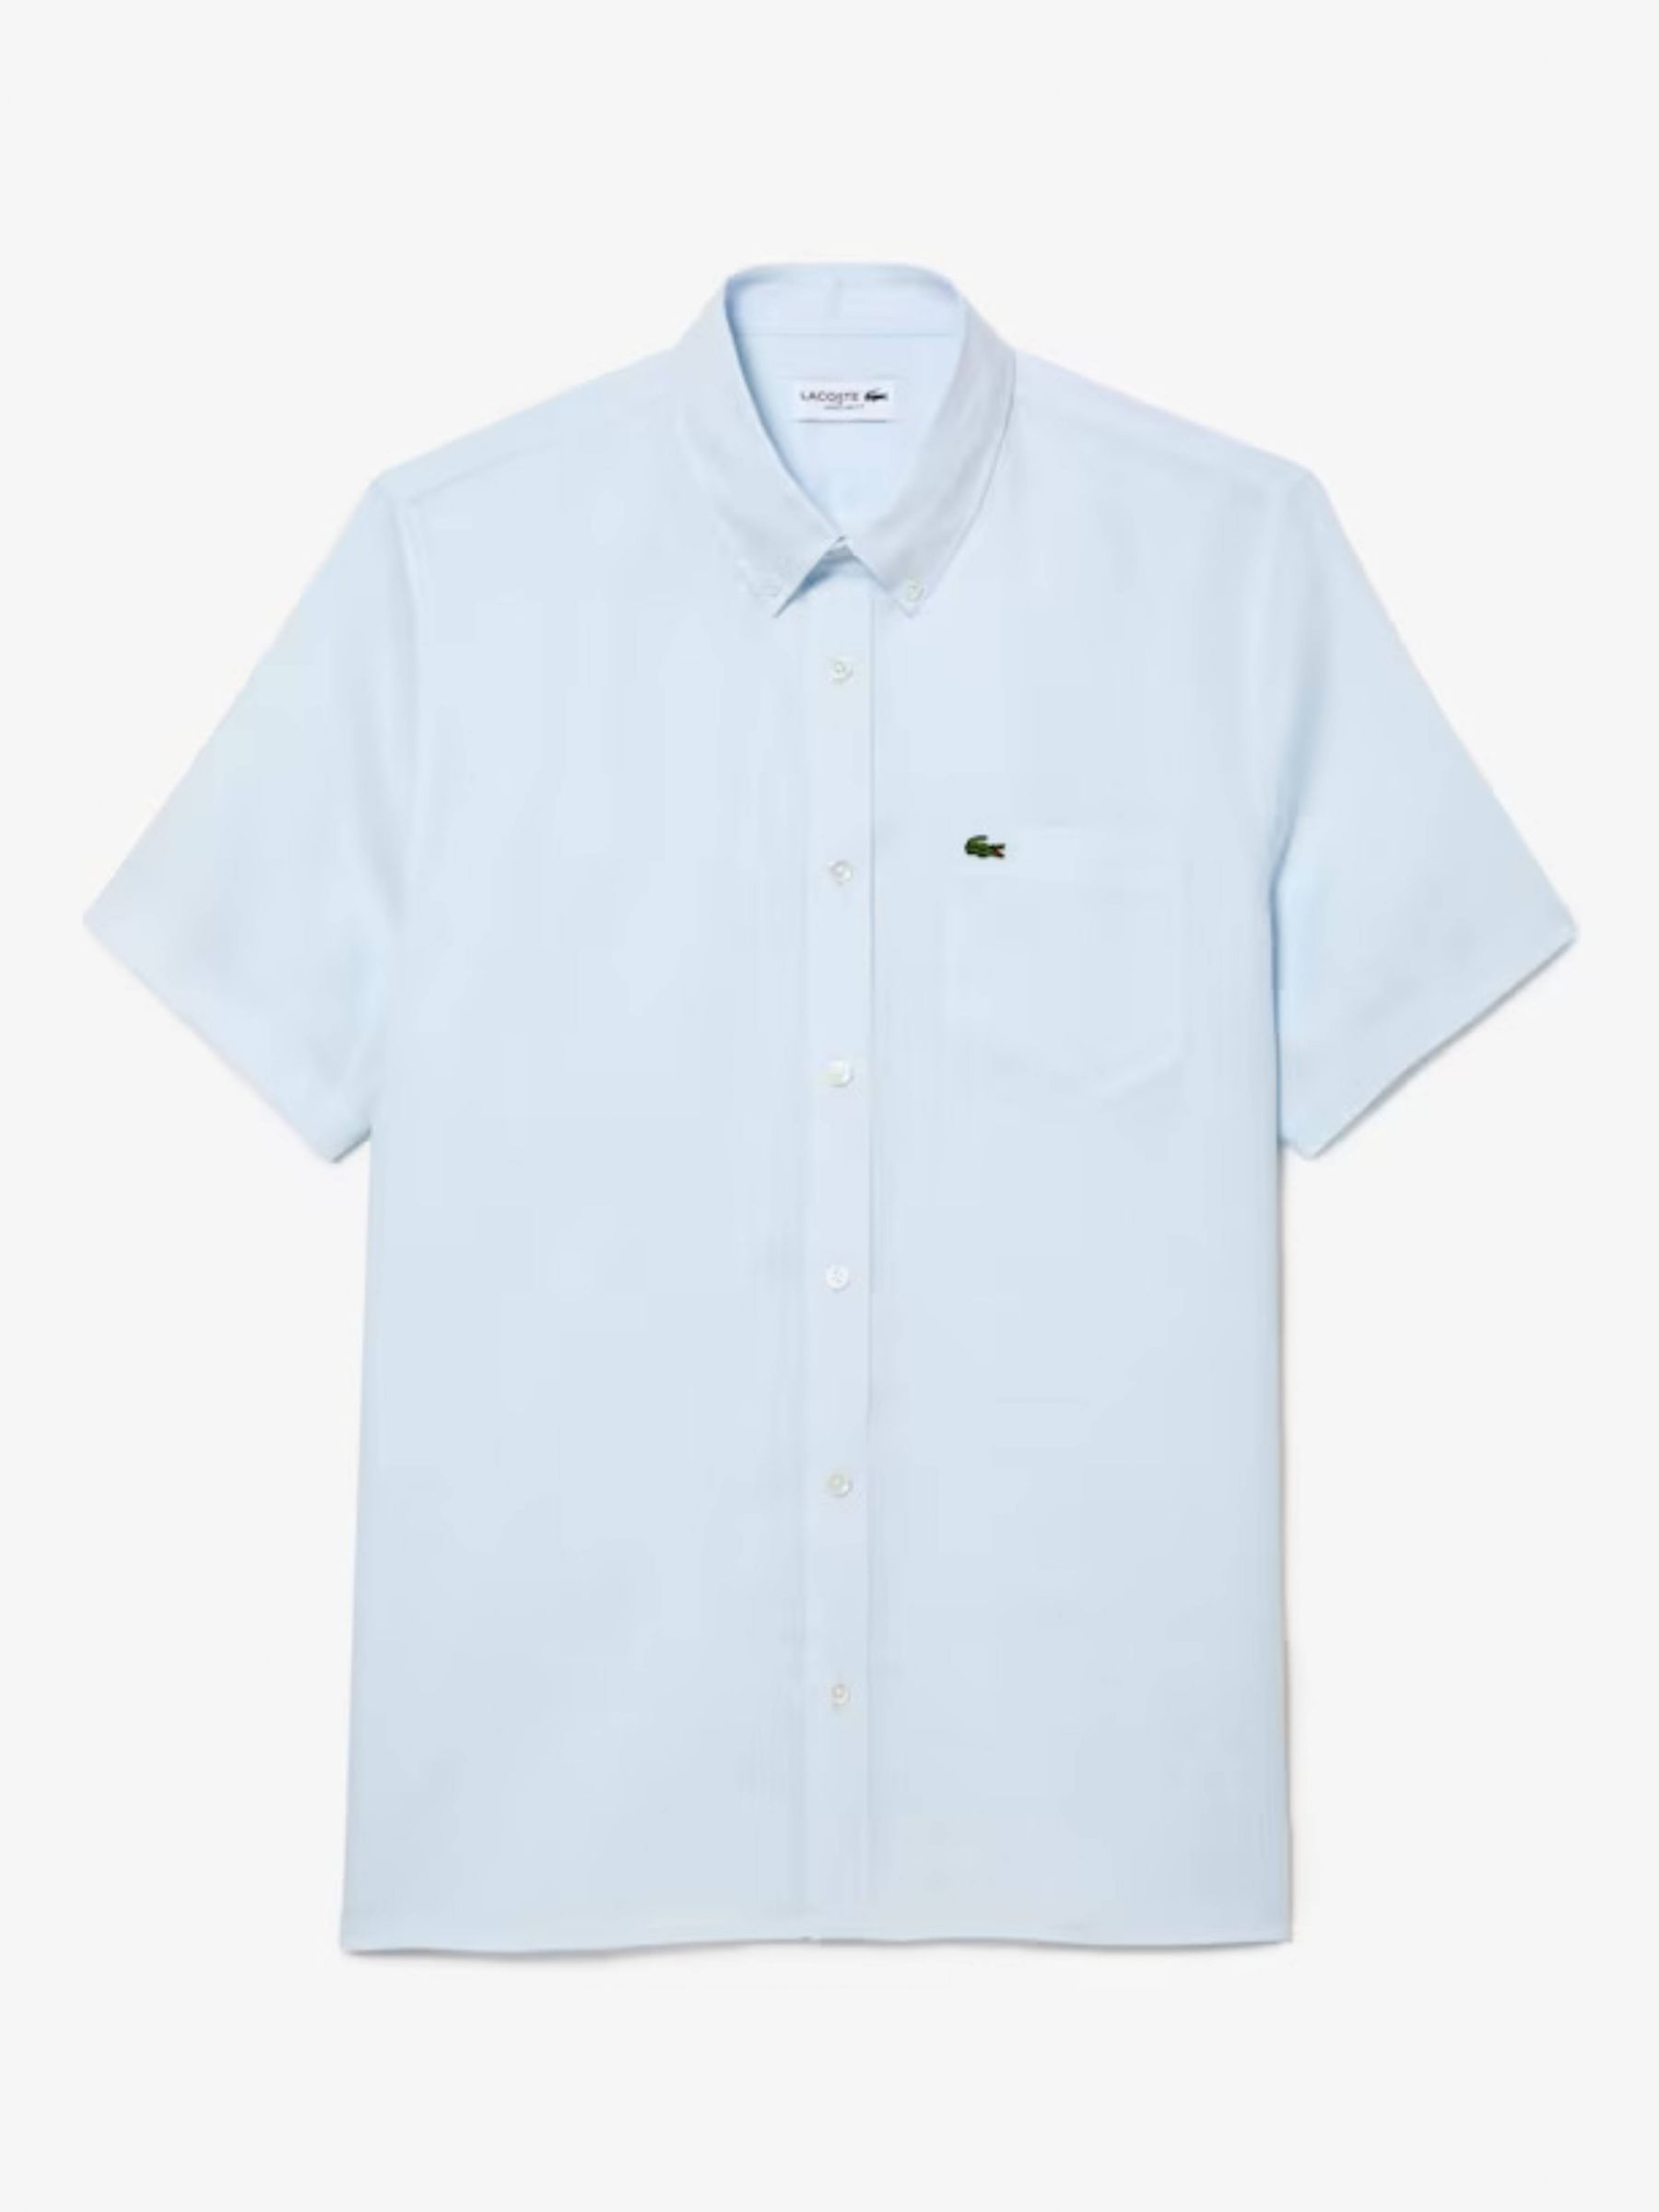 Lacoste Short Sleeve Linen Shirt, Blue, S